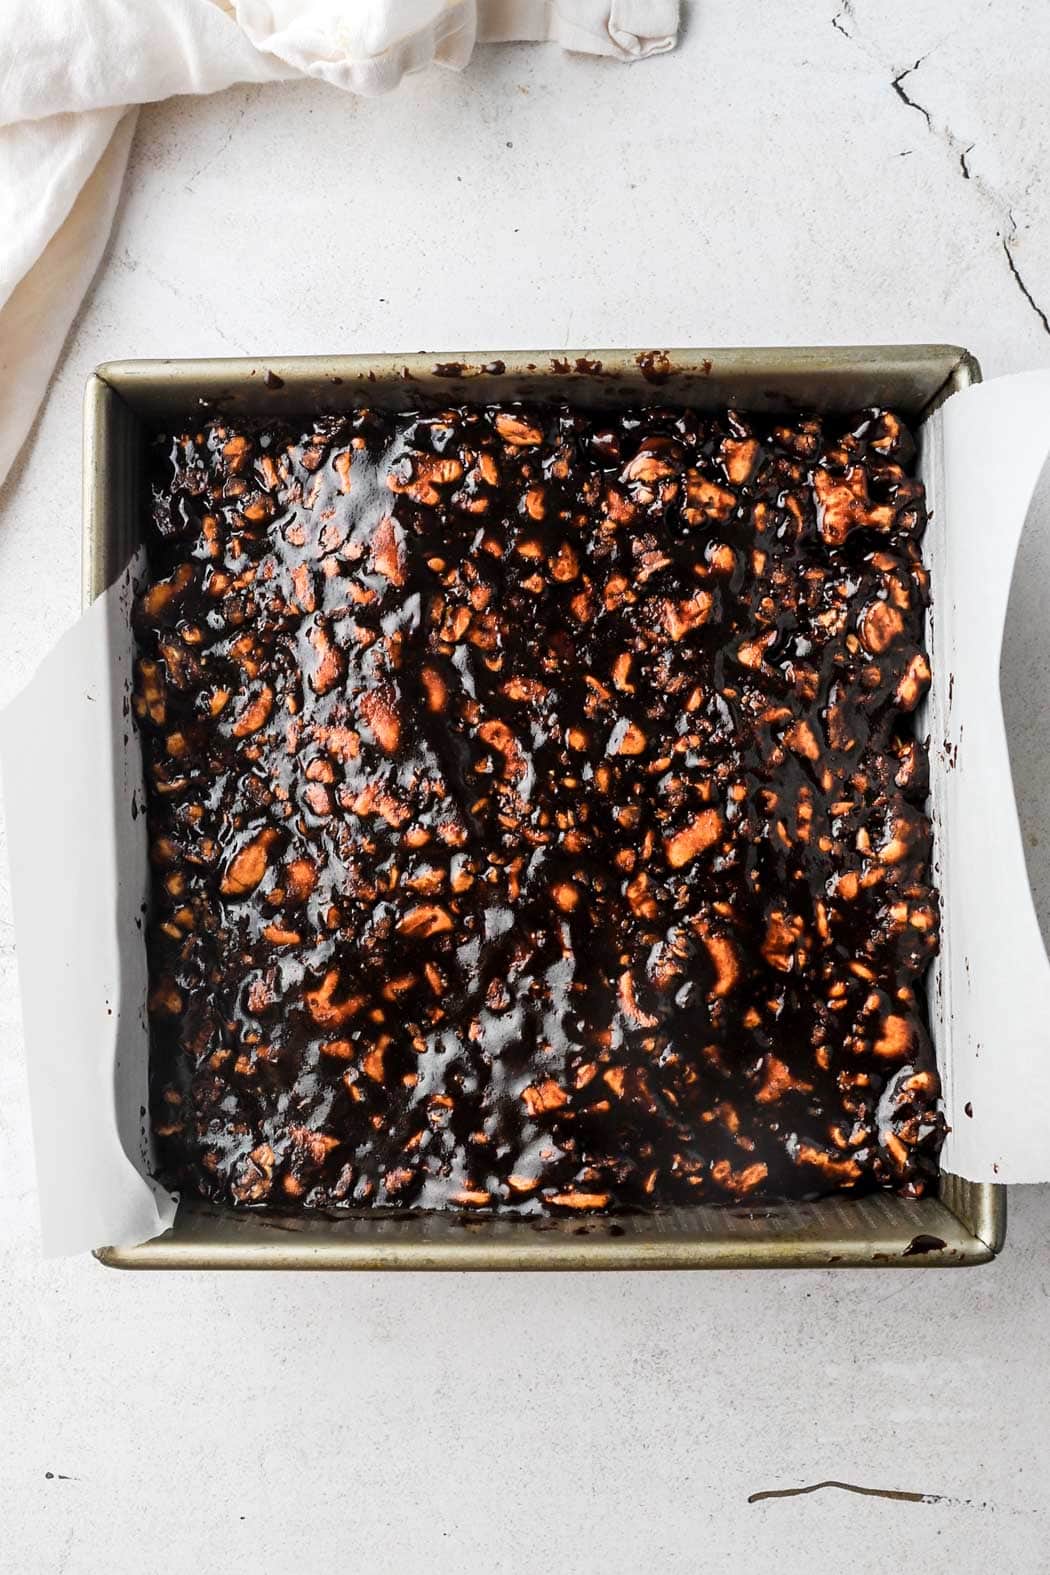 spread into prepared pan